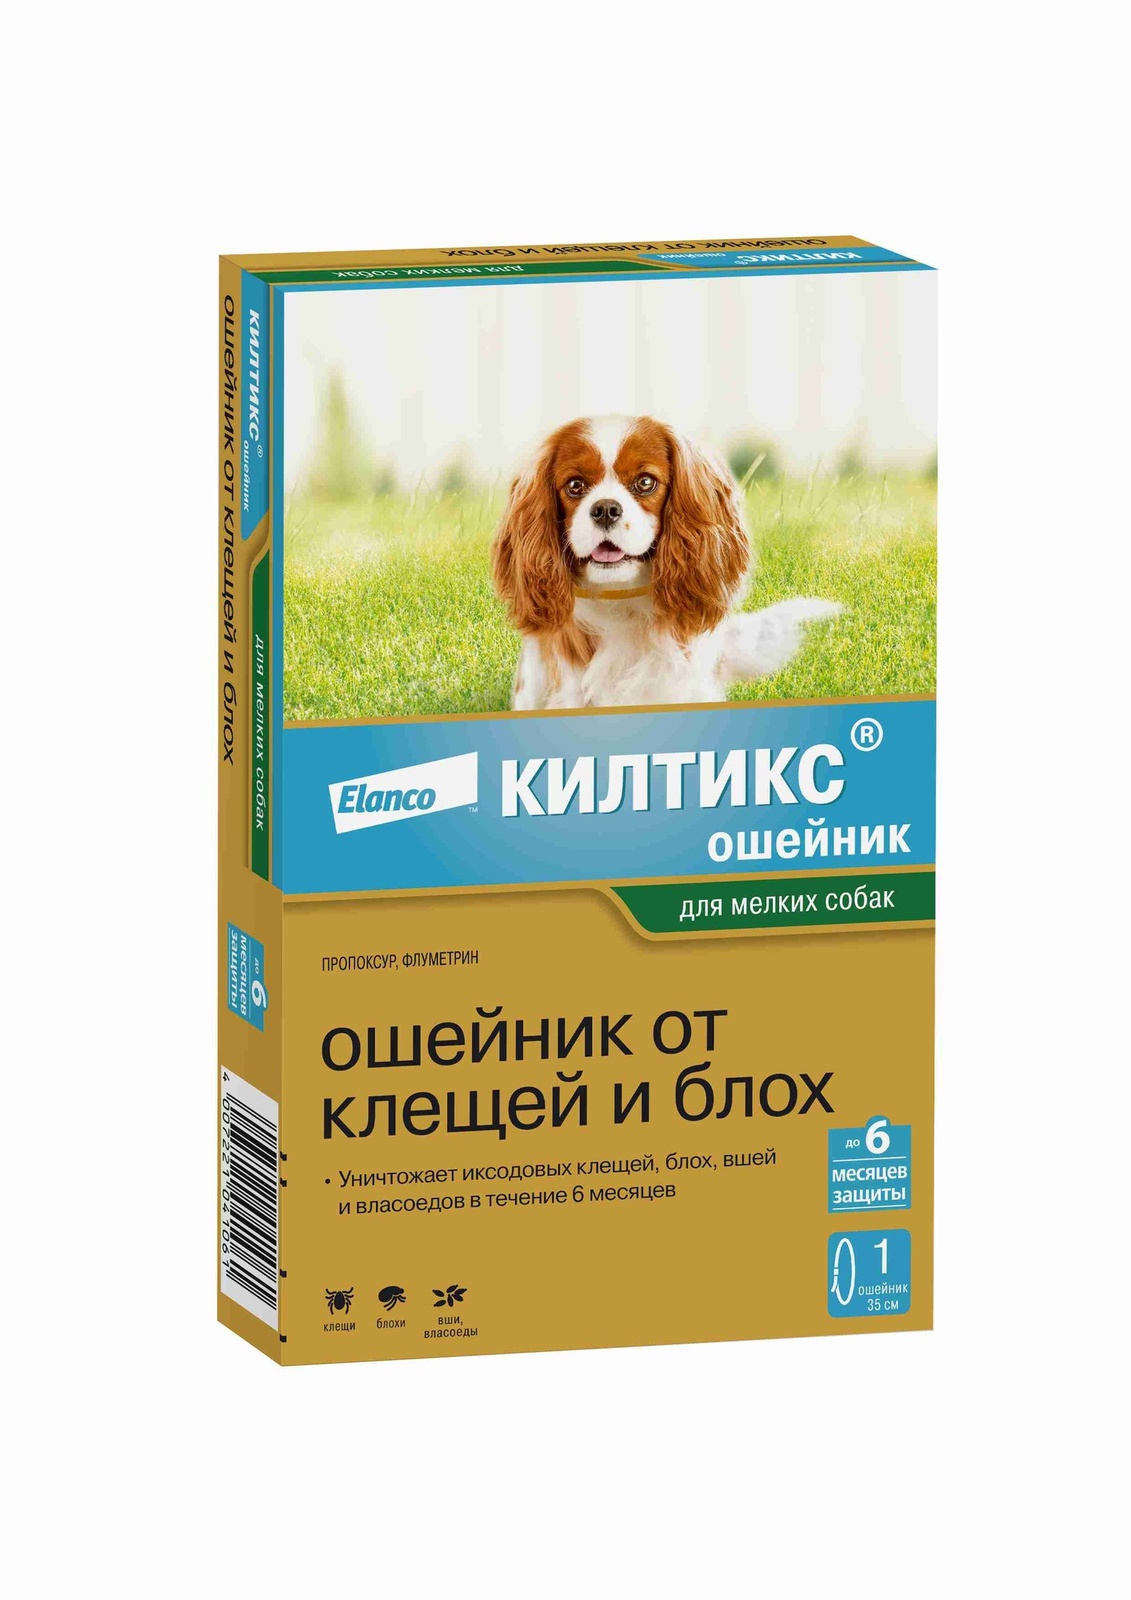 Elanco Elanco ошейник Килтикс® от клещей и блох для щенков и собак мелких пород (10 г)